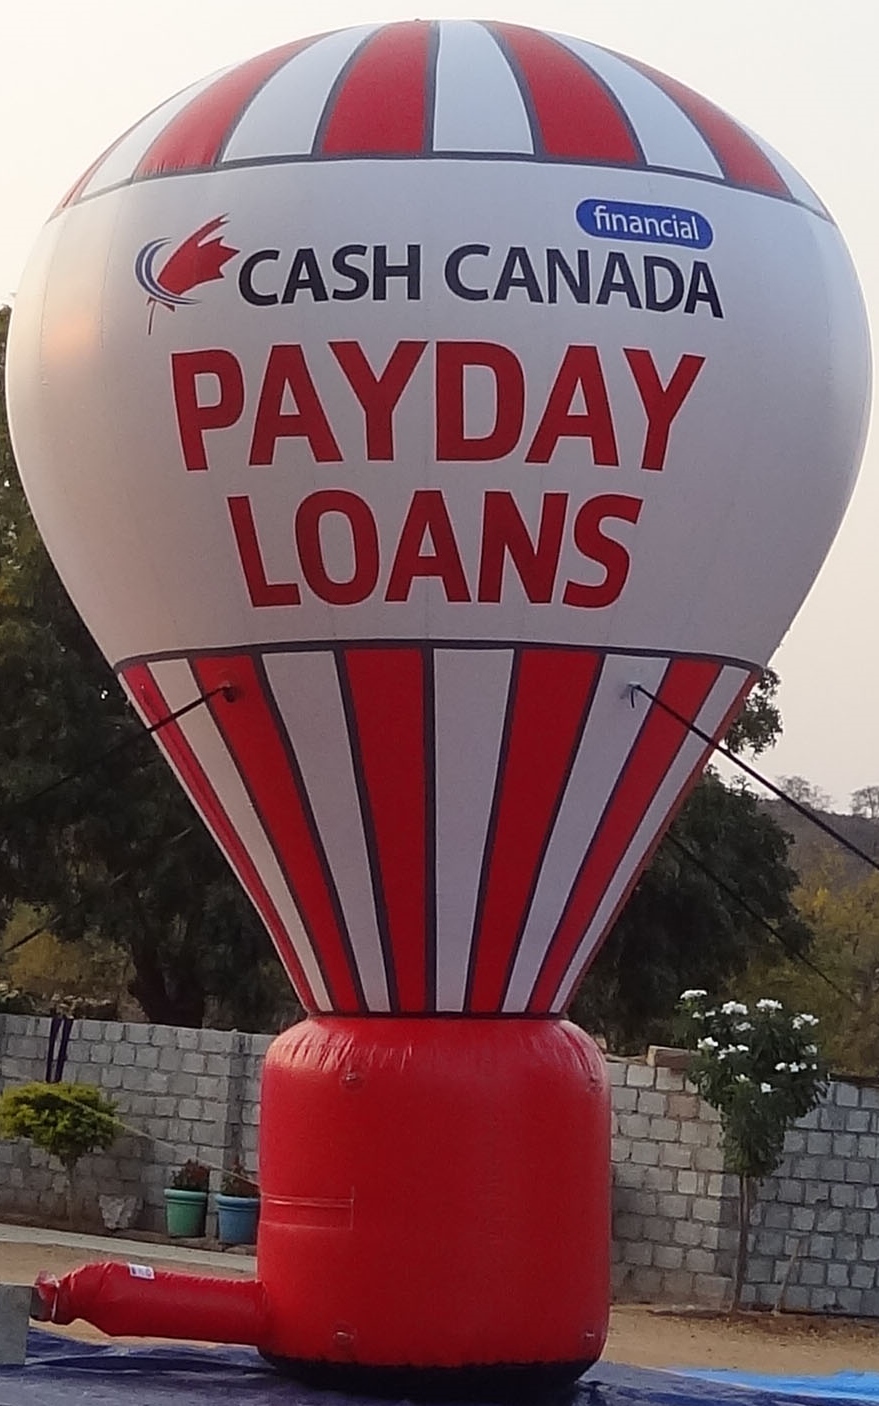 Hot Air Balloon for Cash Canada